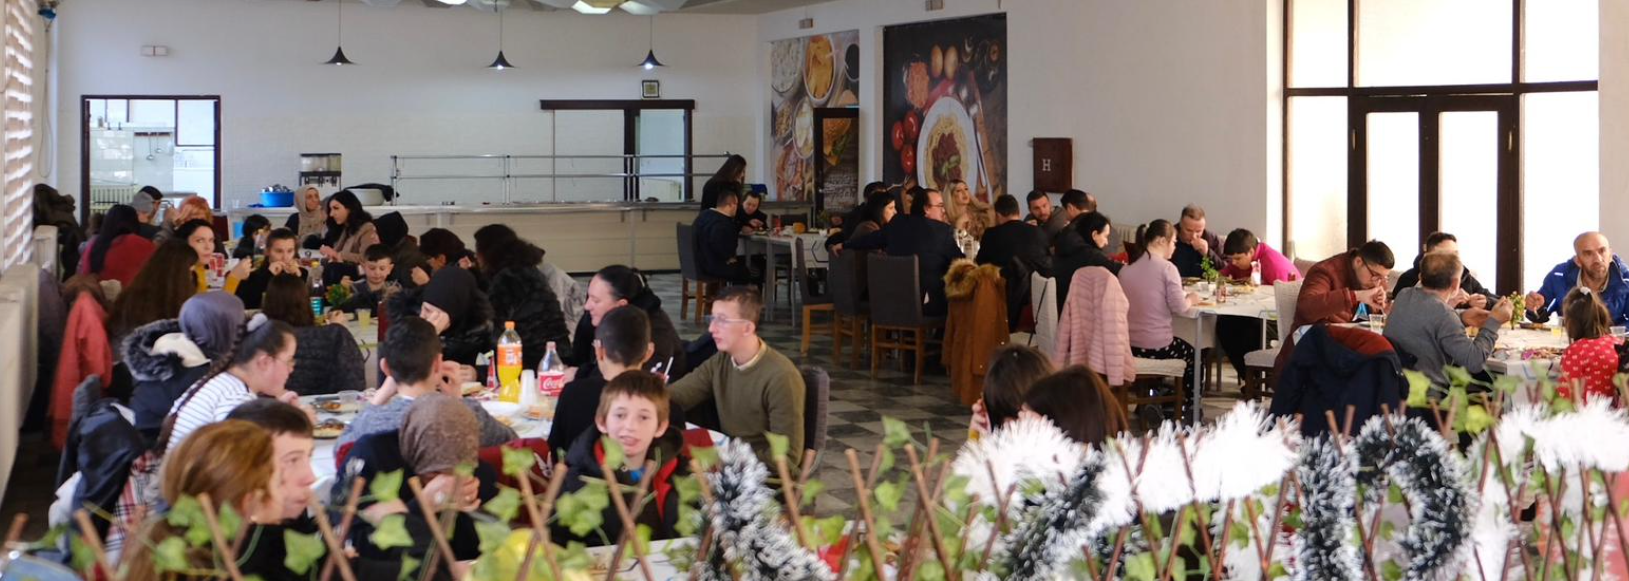 Komuna e Gostivarit organizoi drekë solemne për vitin e ri për shoqatat e personave me aftësi ndryshe